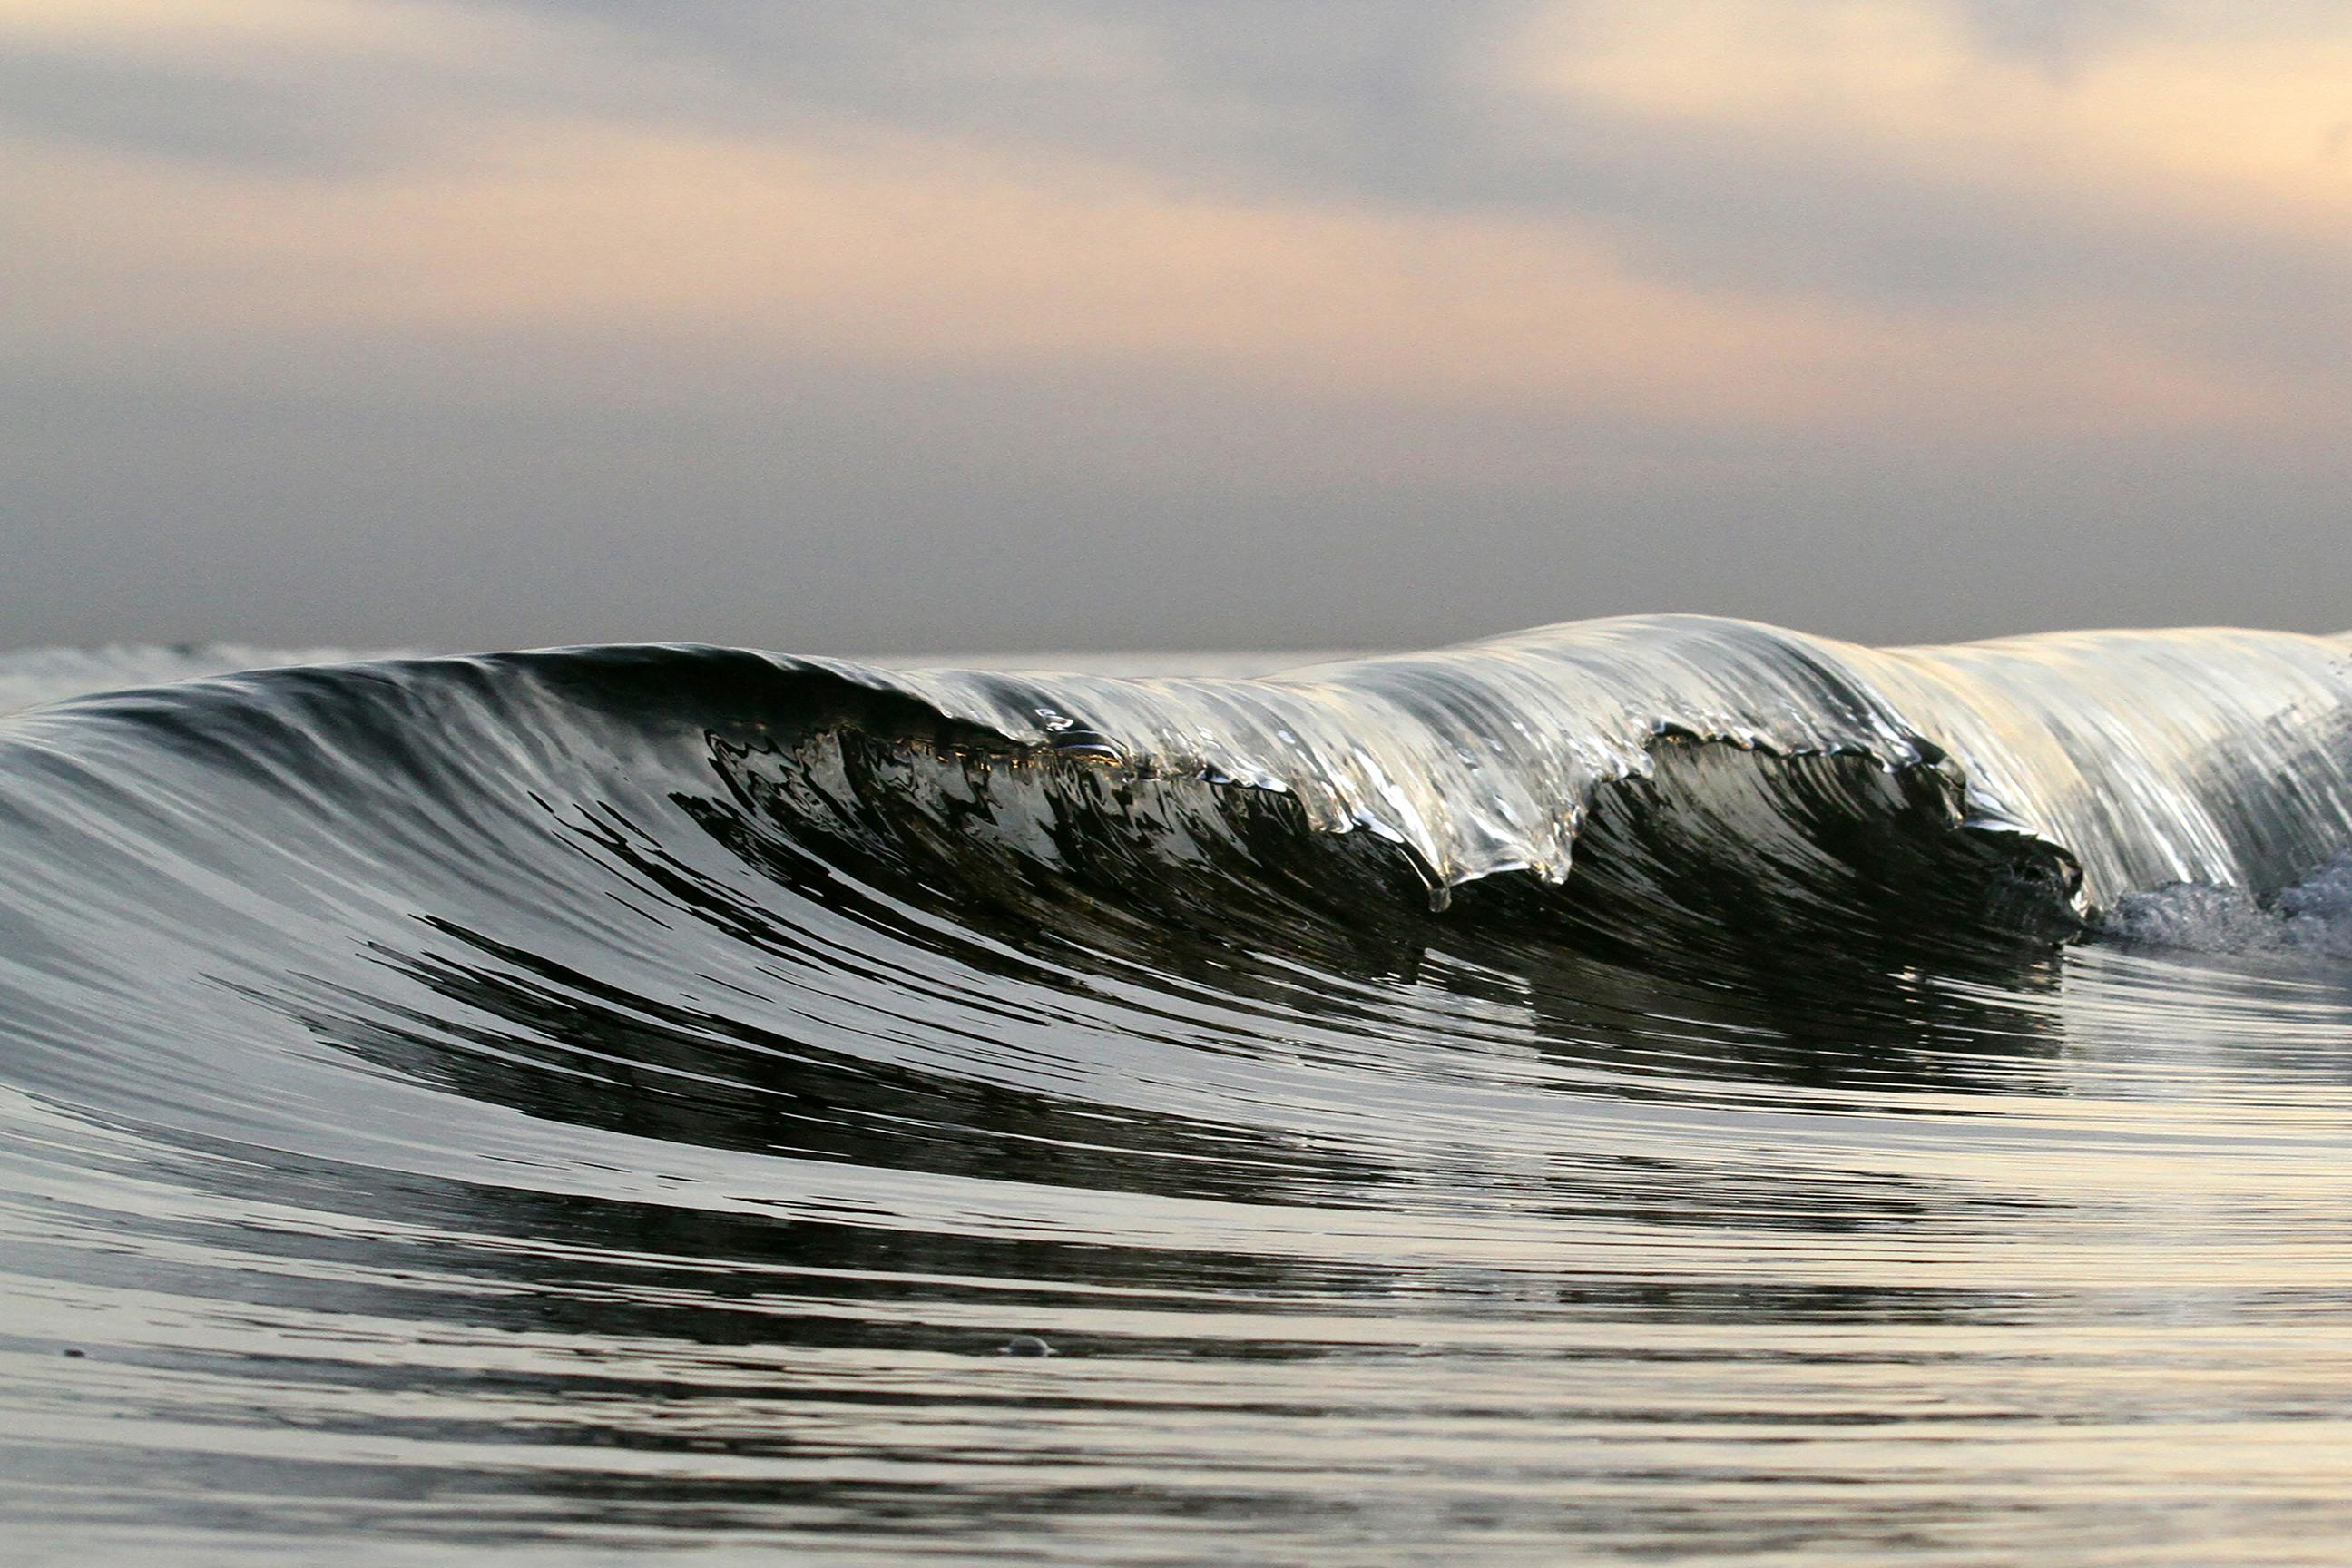 Color Photograph Jonathan Spector - La vague mercurée, photographie d'art de paysage océanique, encadrée en plexiglas, signée 